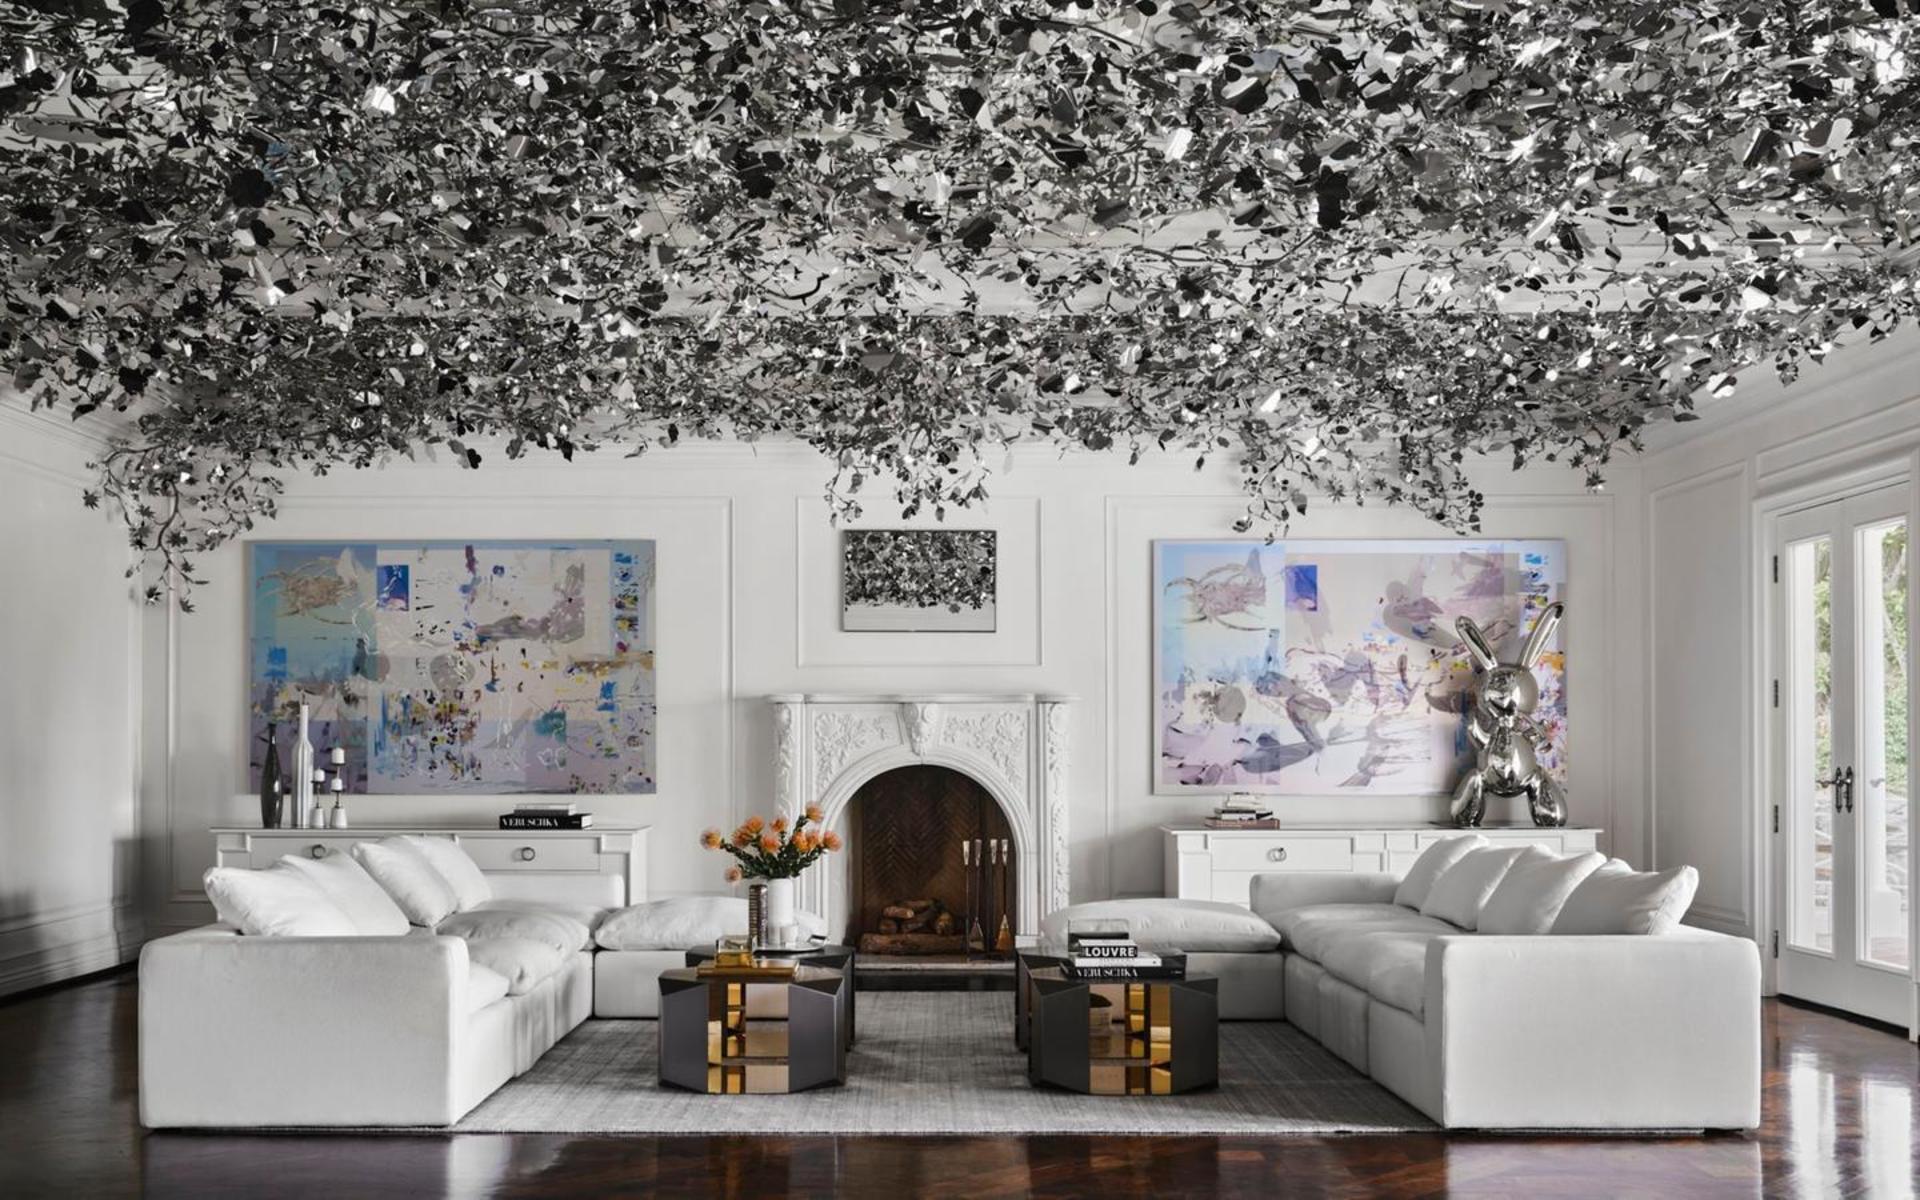 Huset i Bel Air har 60 rum, och det är den franske inredningsdesignern Philippe Starck som ligger bakom inredningen. Det här vardagsrummet har fått en silverfärgad inredning med silver lull-lull i taket. 